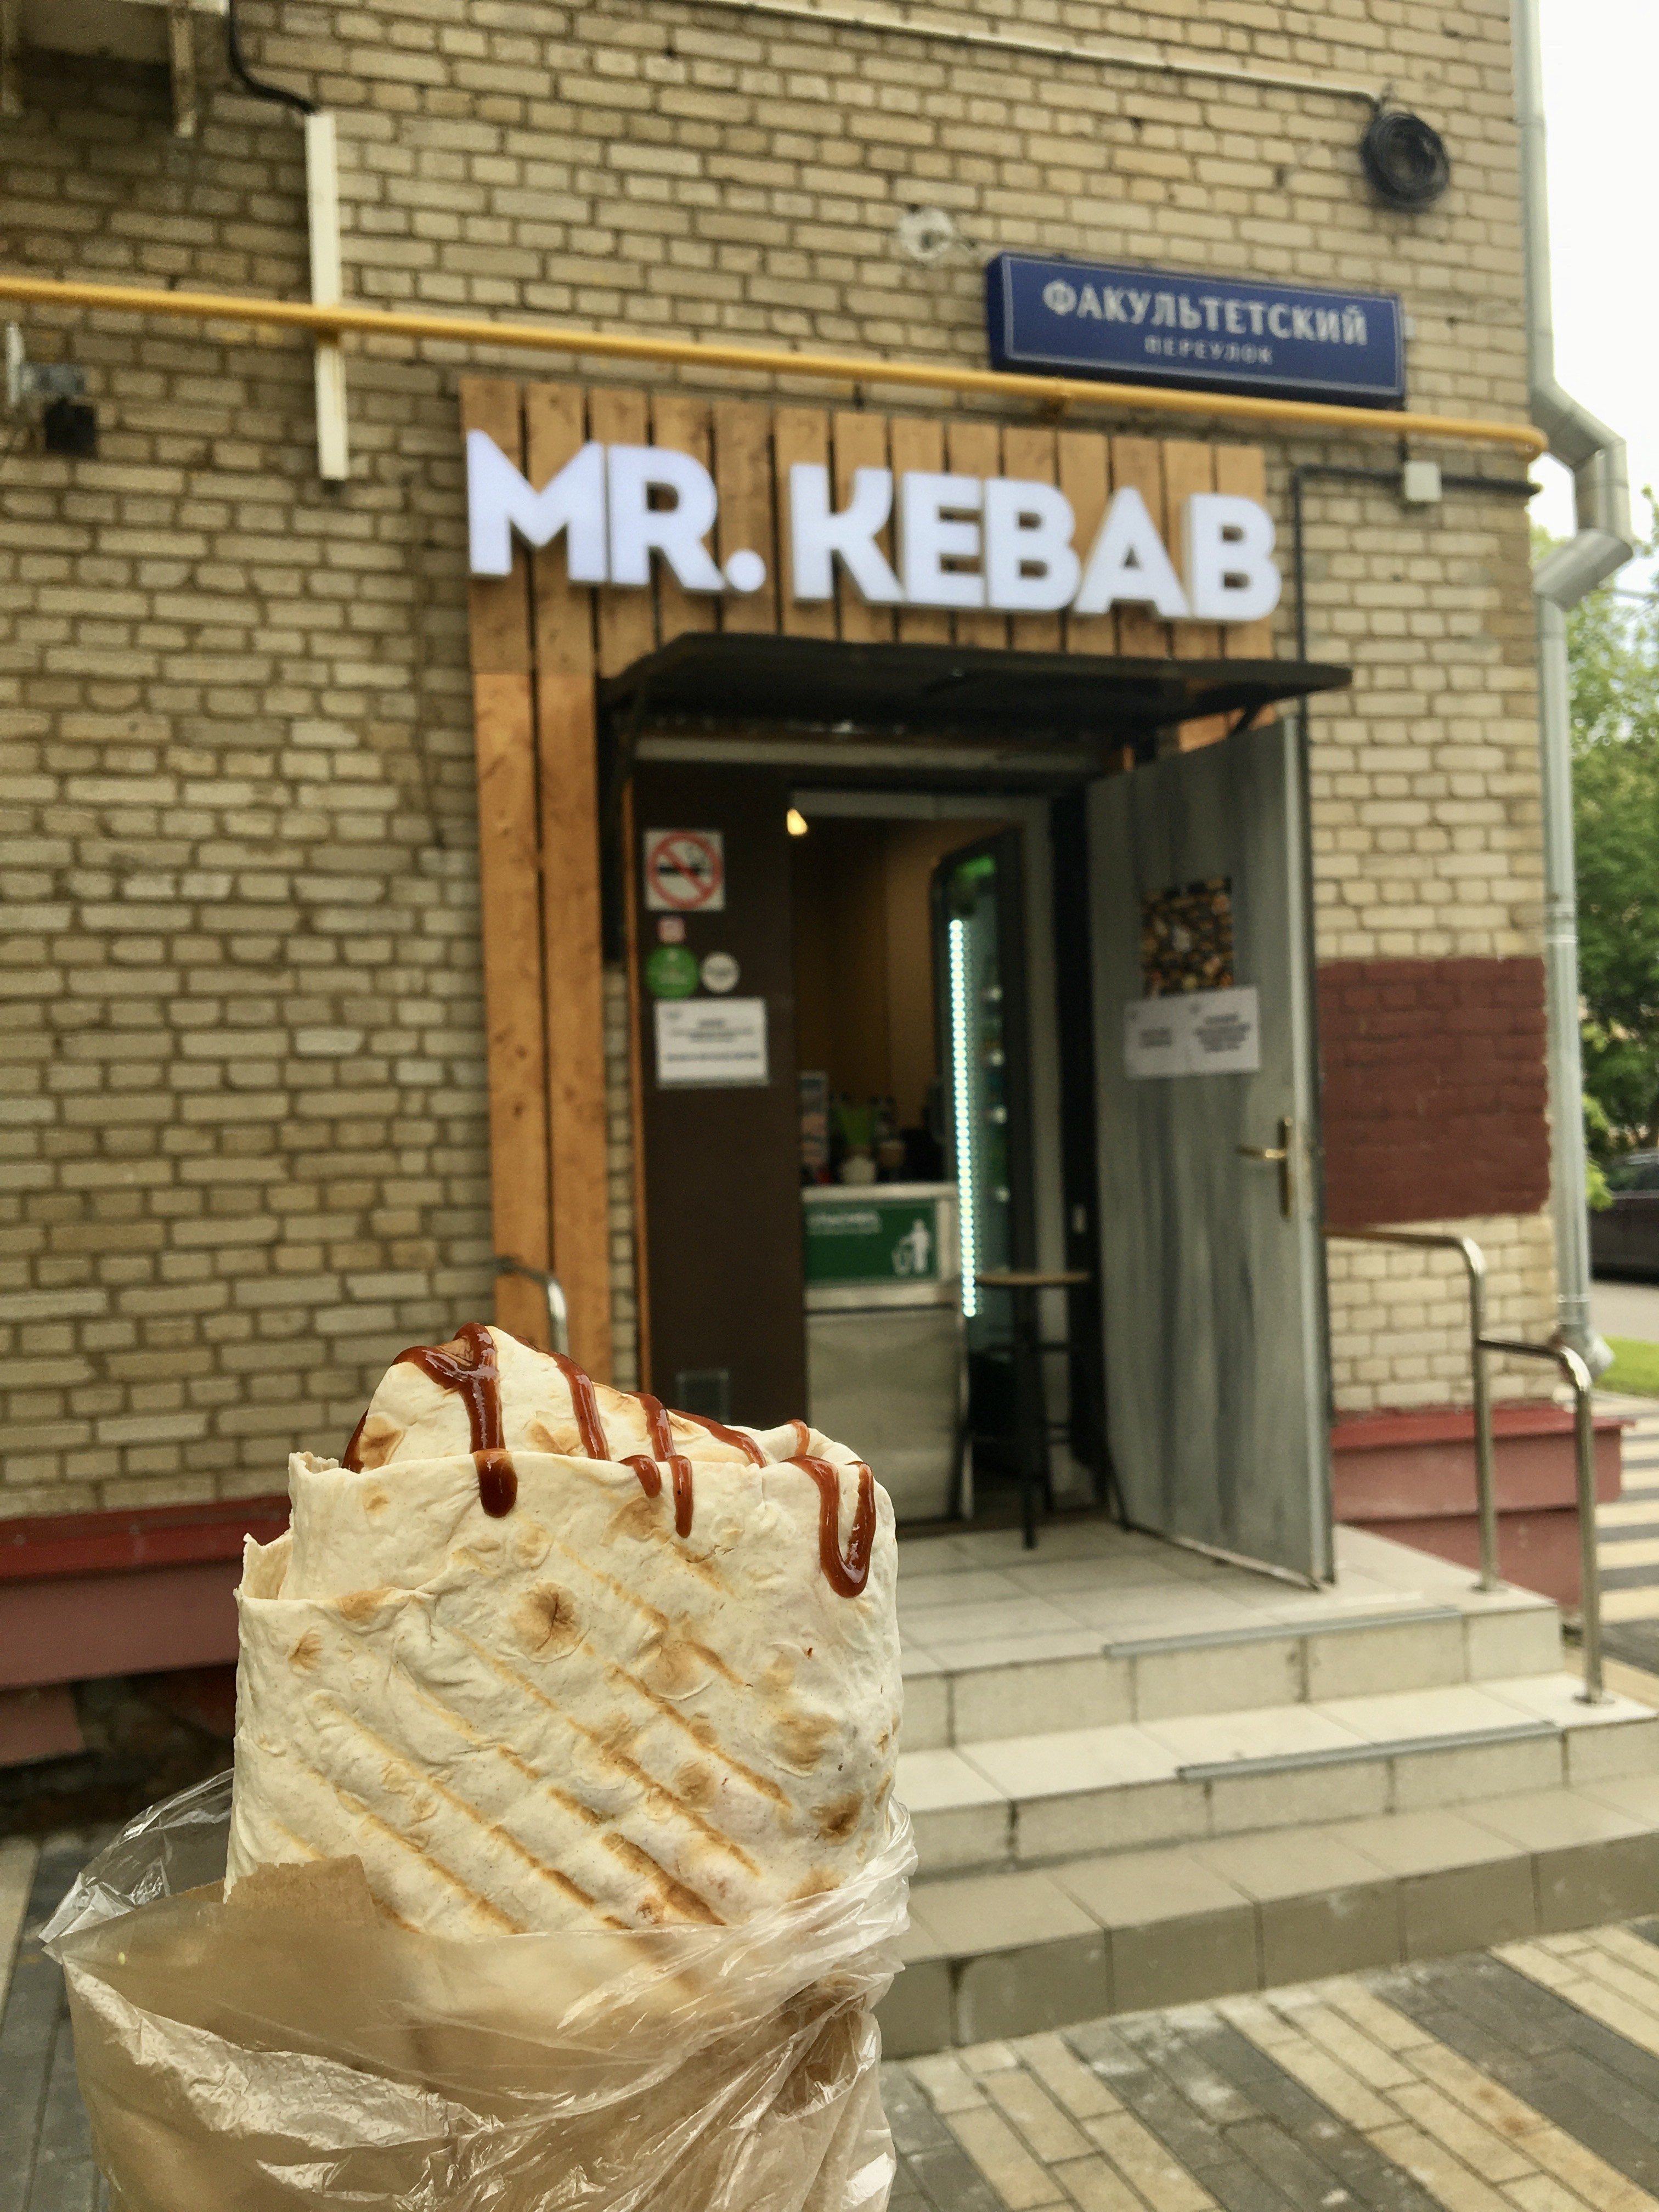 Mr. Kebab, кафе быстрого питания, Дубосековская улица, 7, 1 этаж